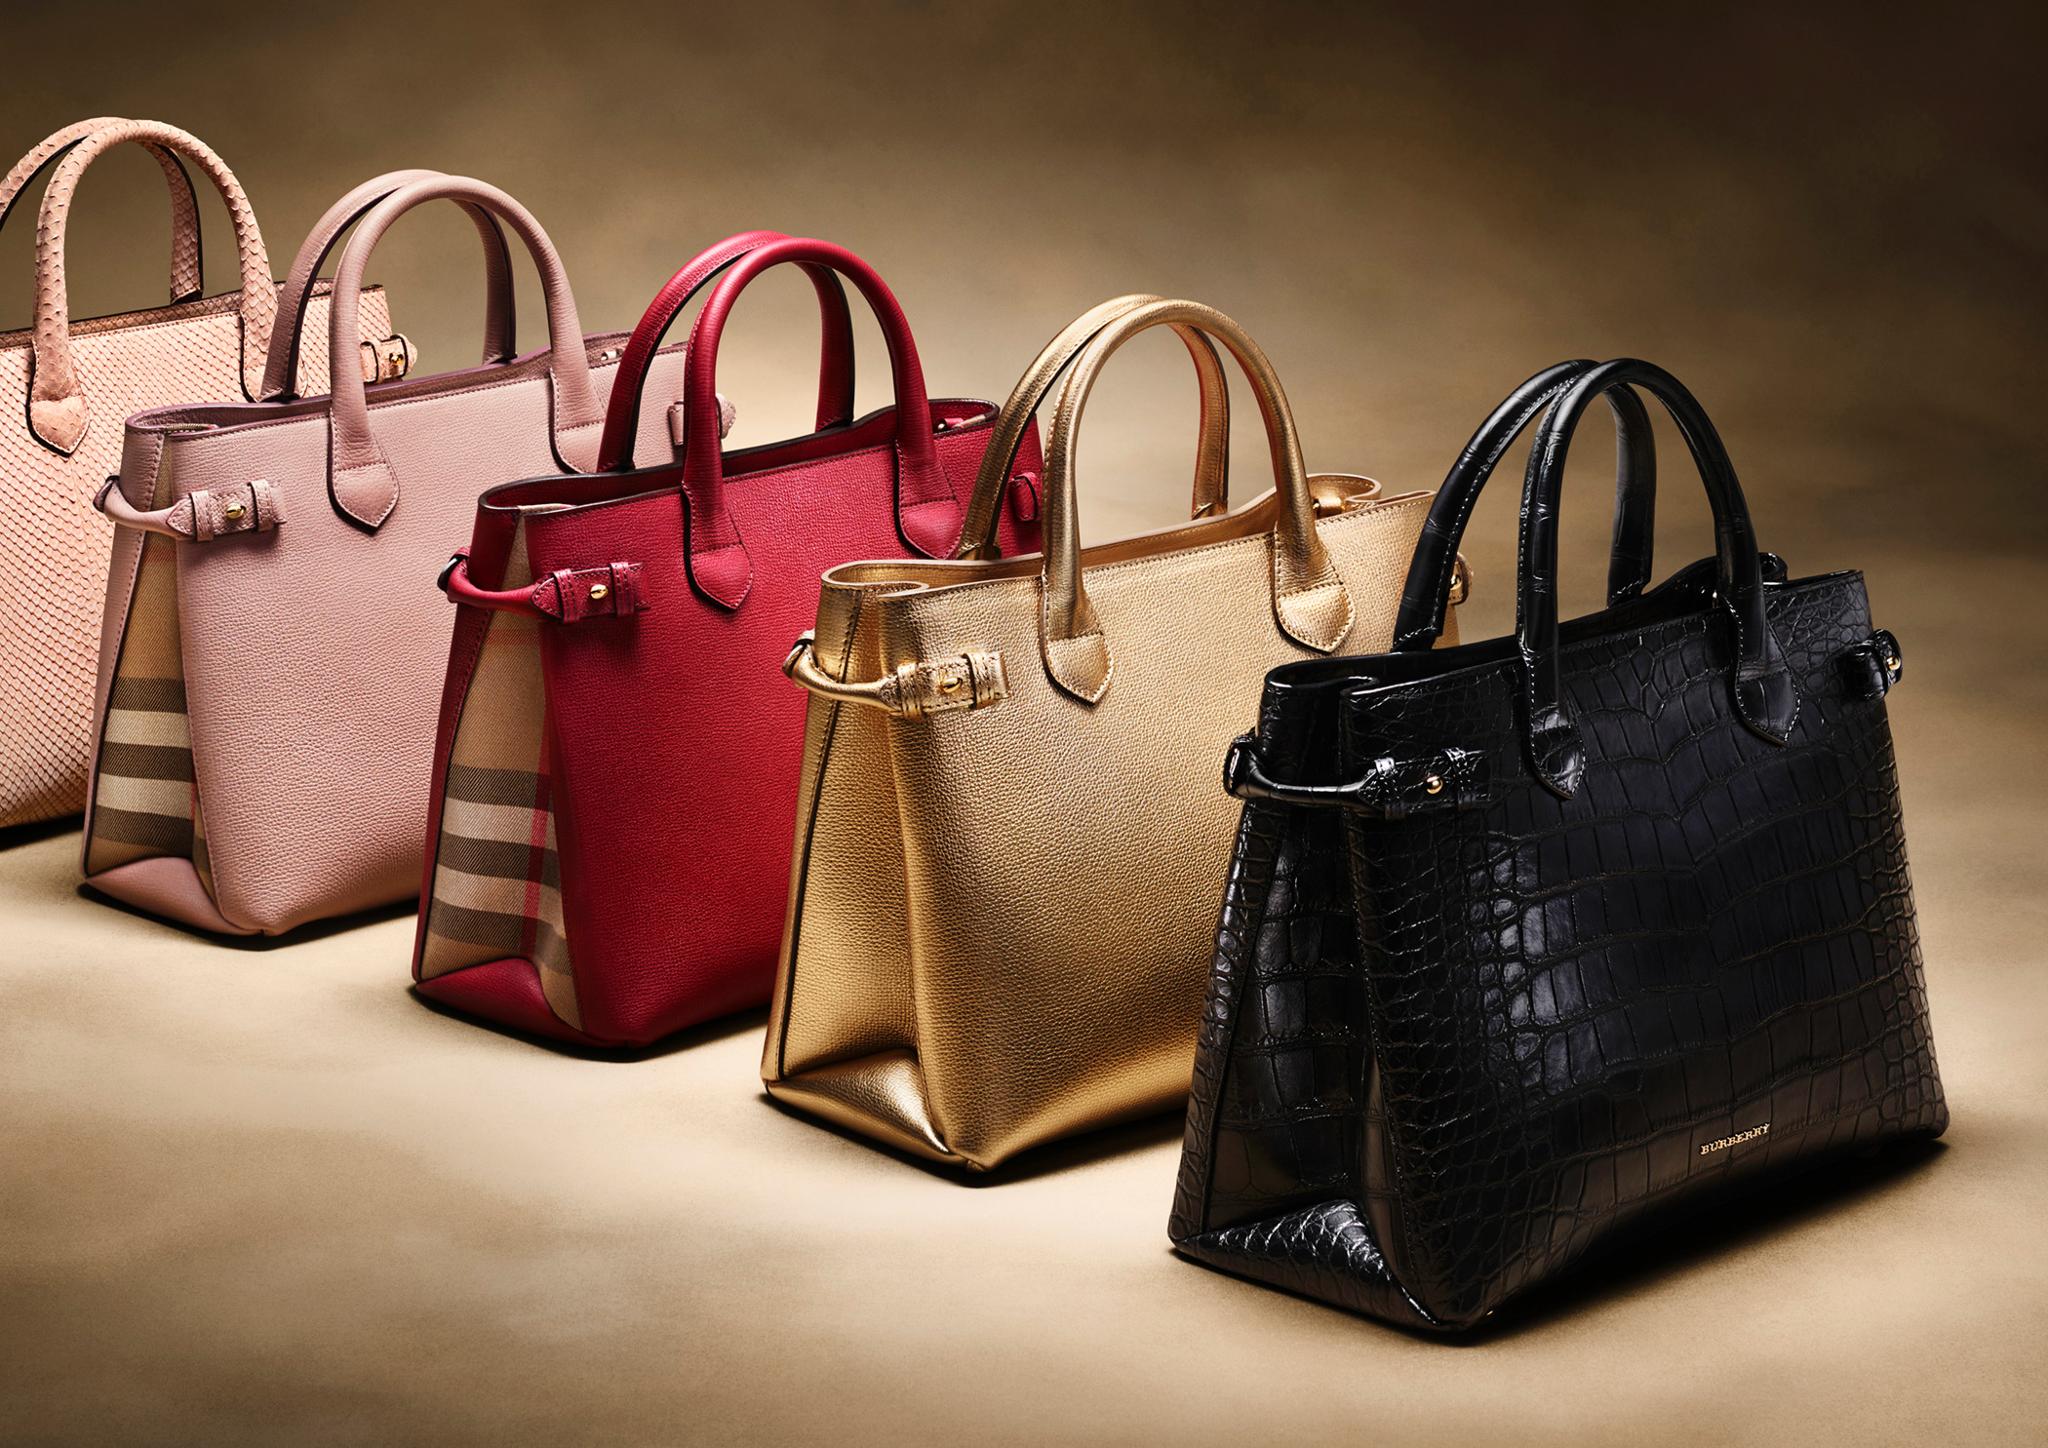 Bags shop 1. Модные брендовые сумки. Brendiviy sumki. Сумки женские брендовые. Модные кожаные сумки.